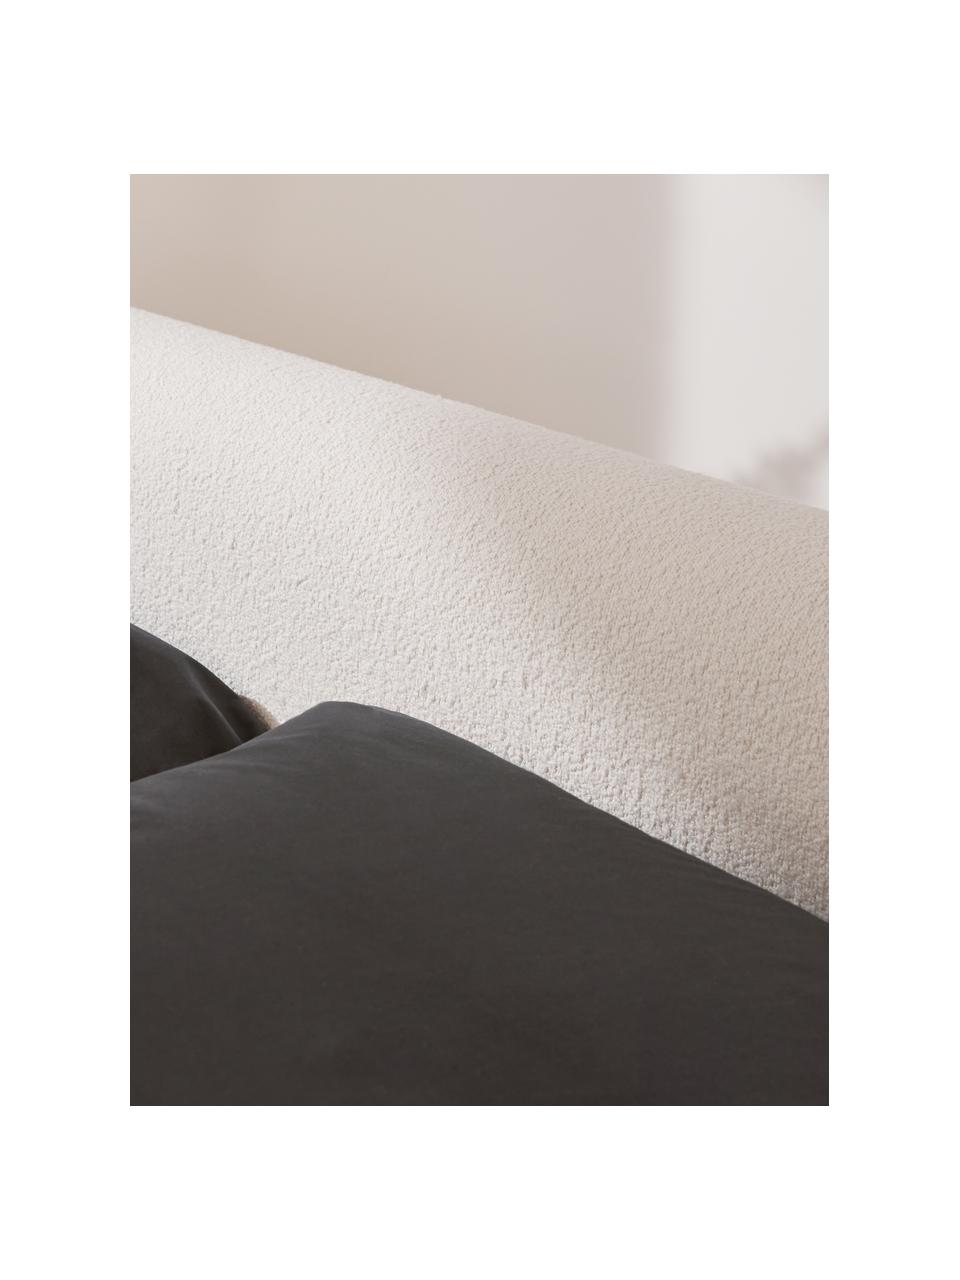 Letto imbottito in tessuto bouclé bianco crema Serena, Bouclé bianco, 180 x 200 cm